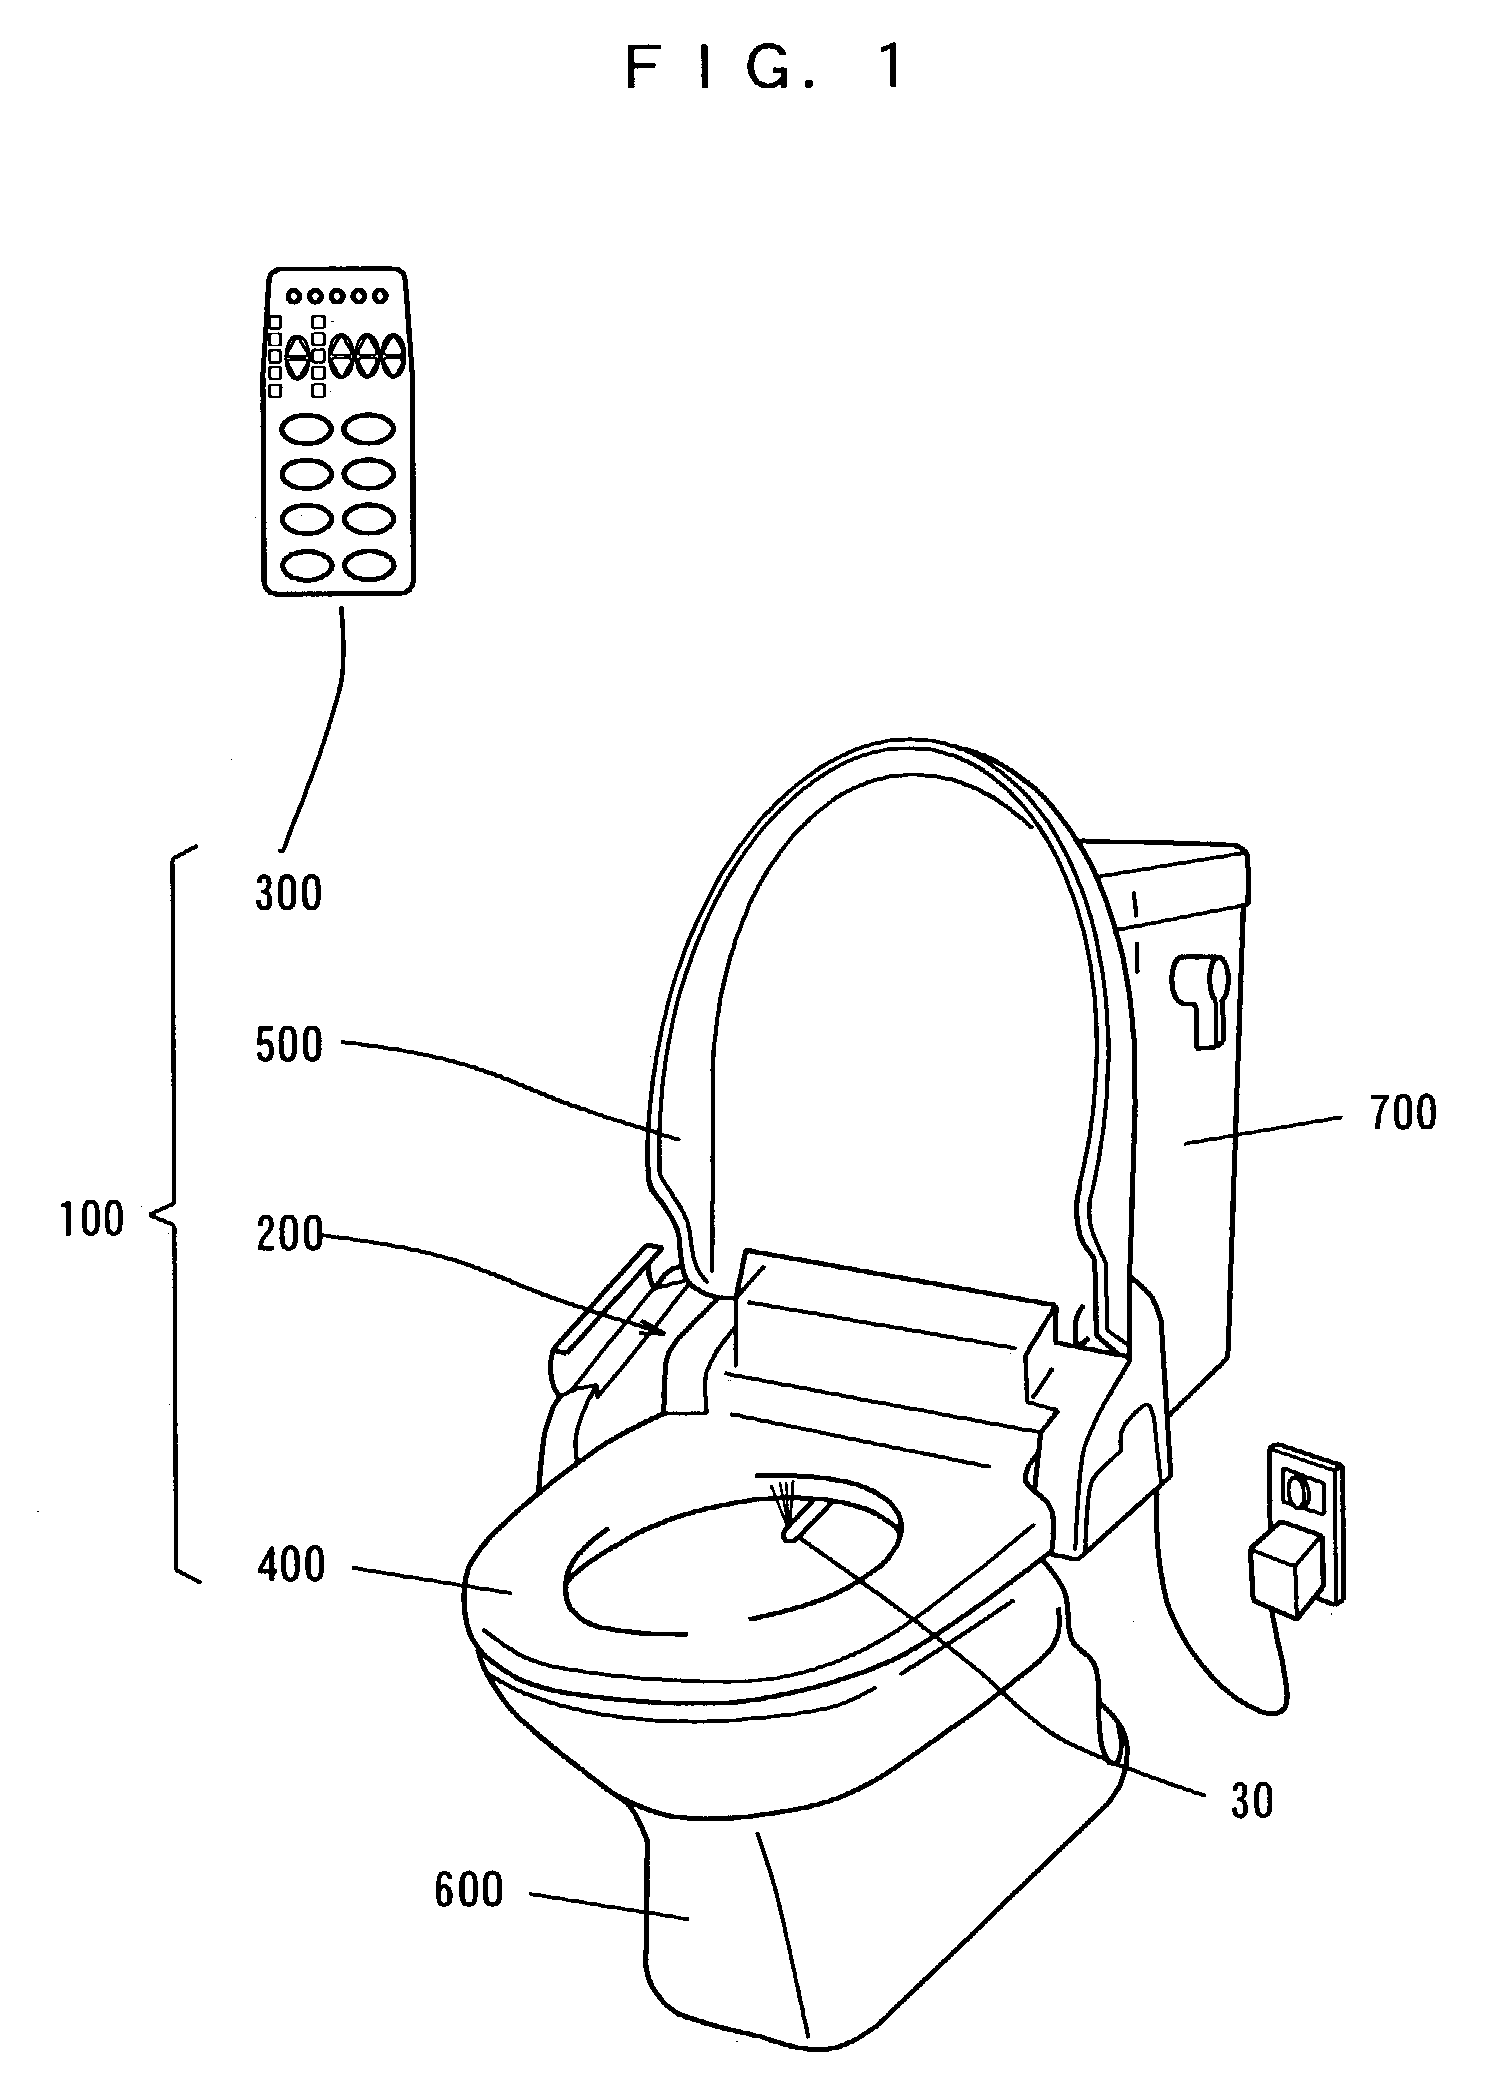 Sanitary washing apparatus